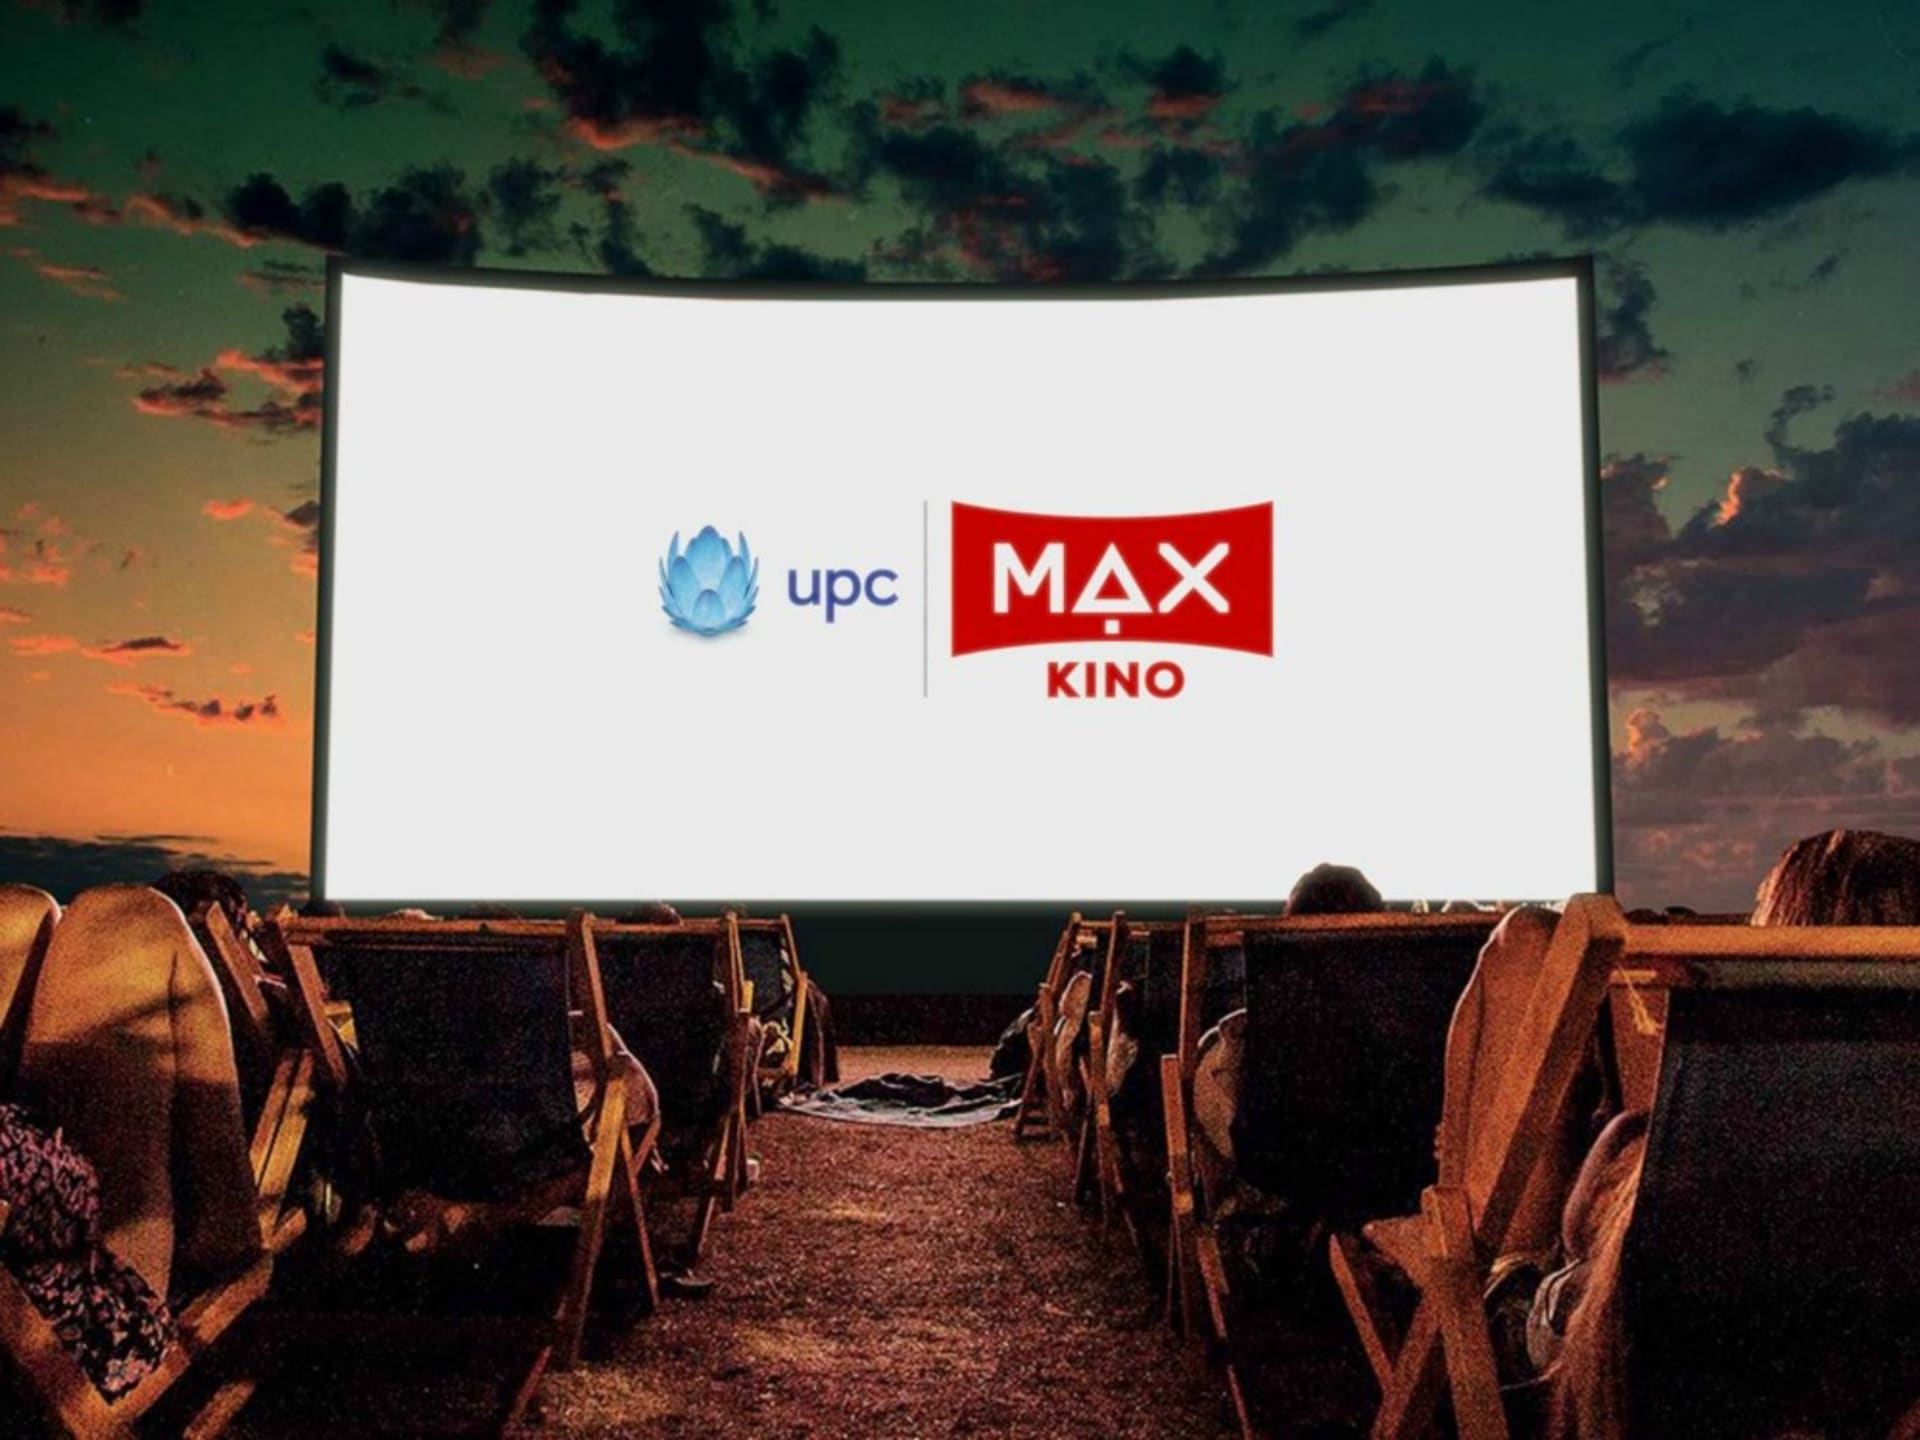 UPC MAX kino 2017